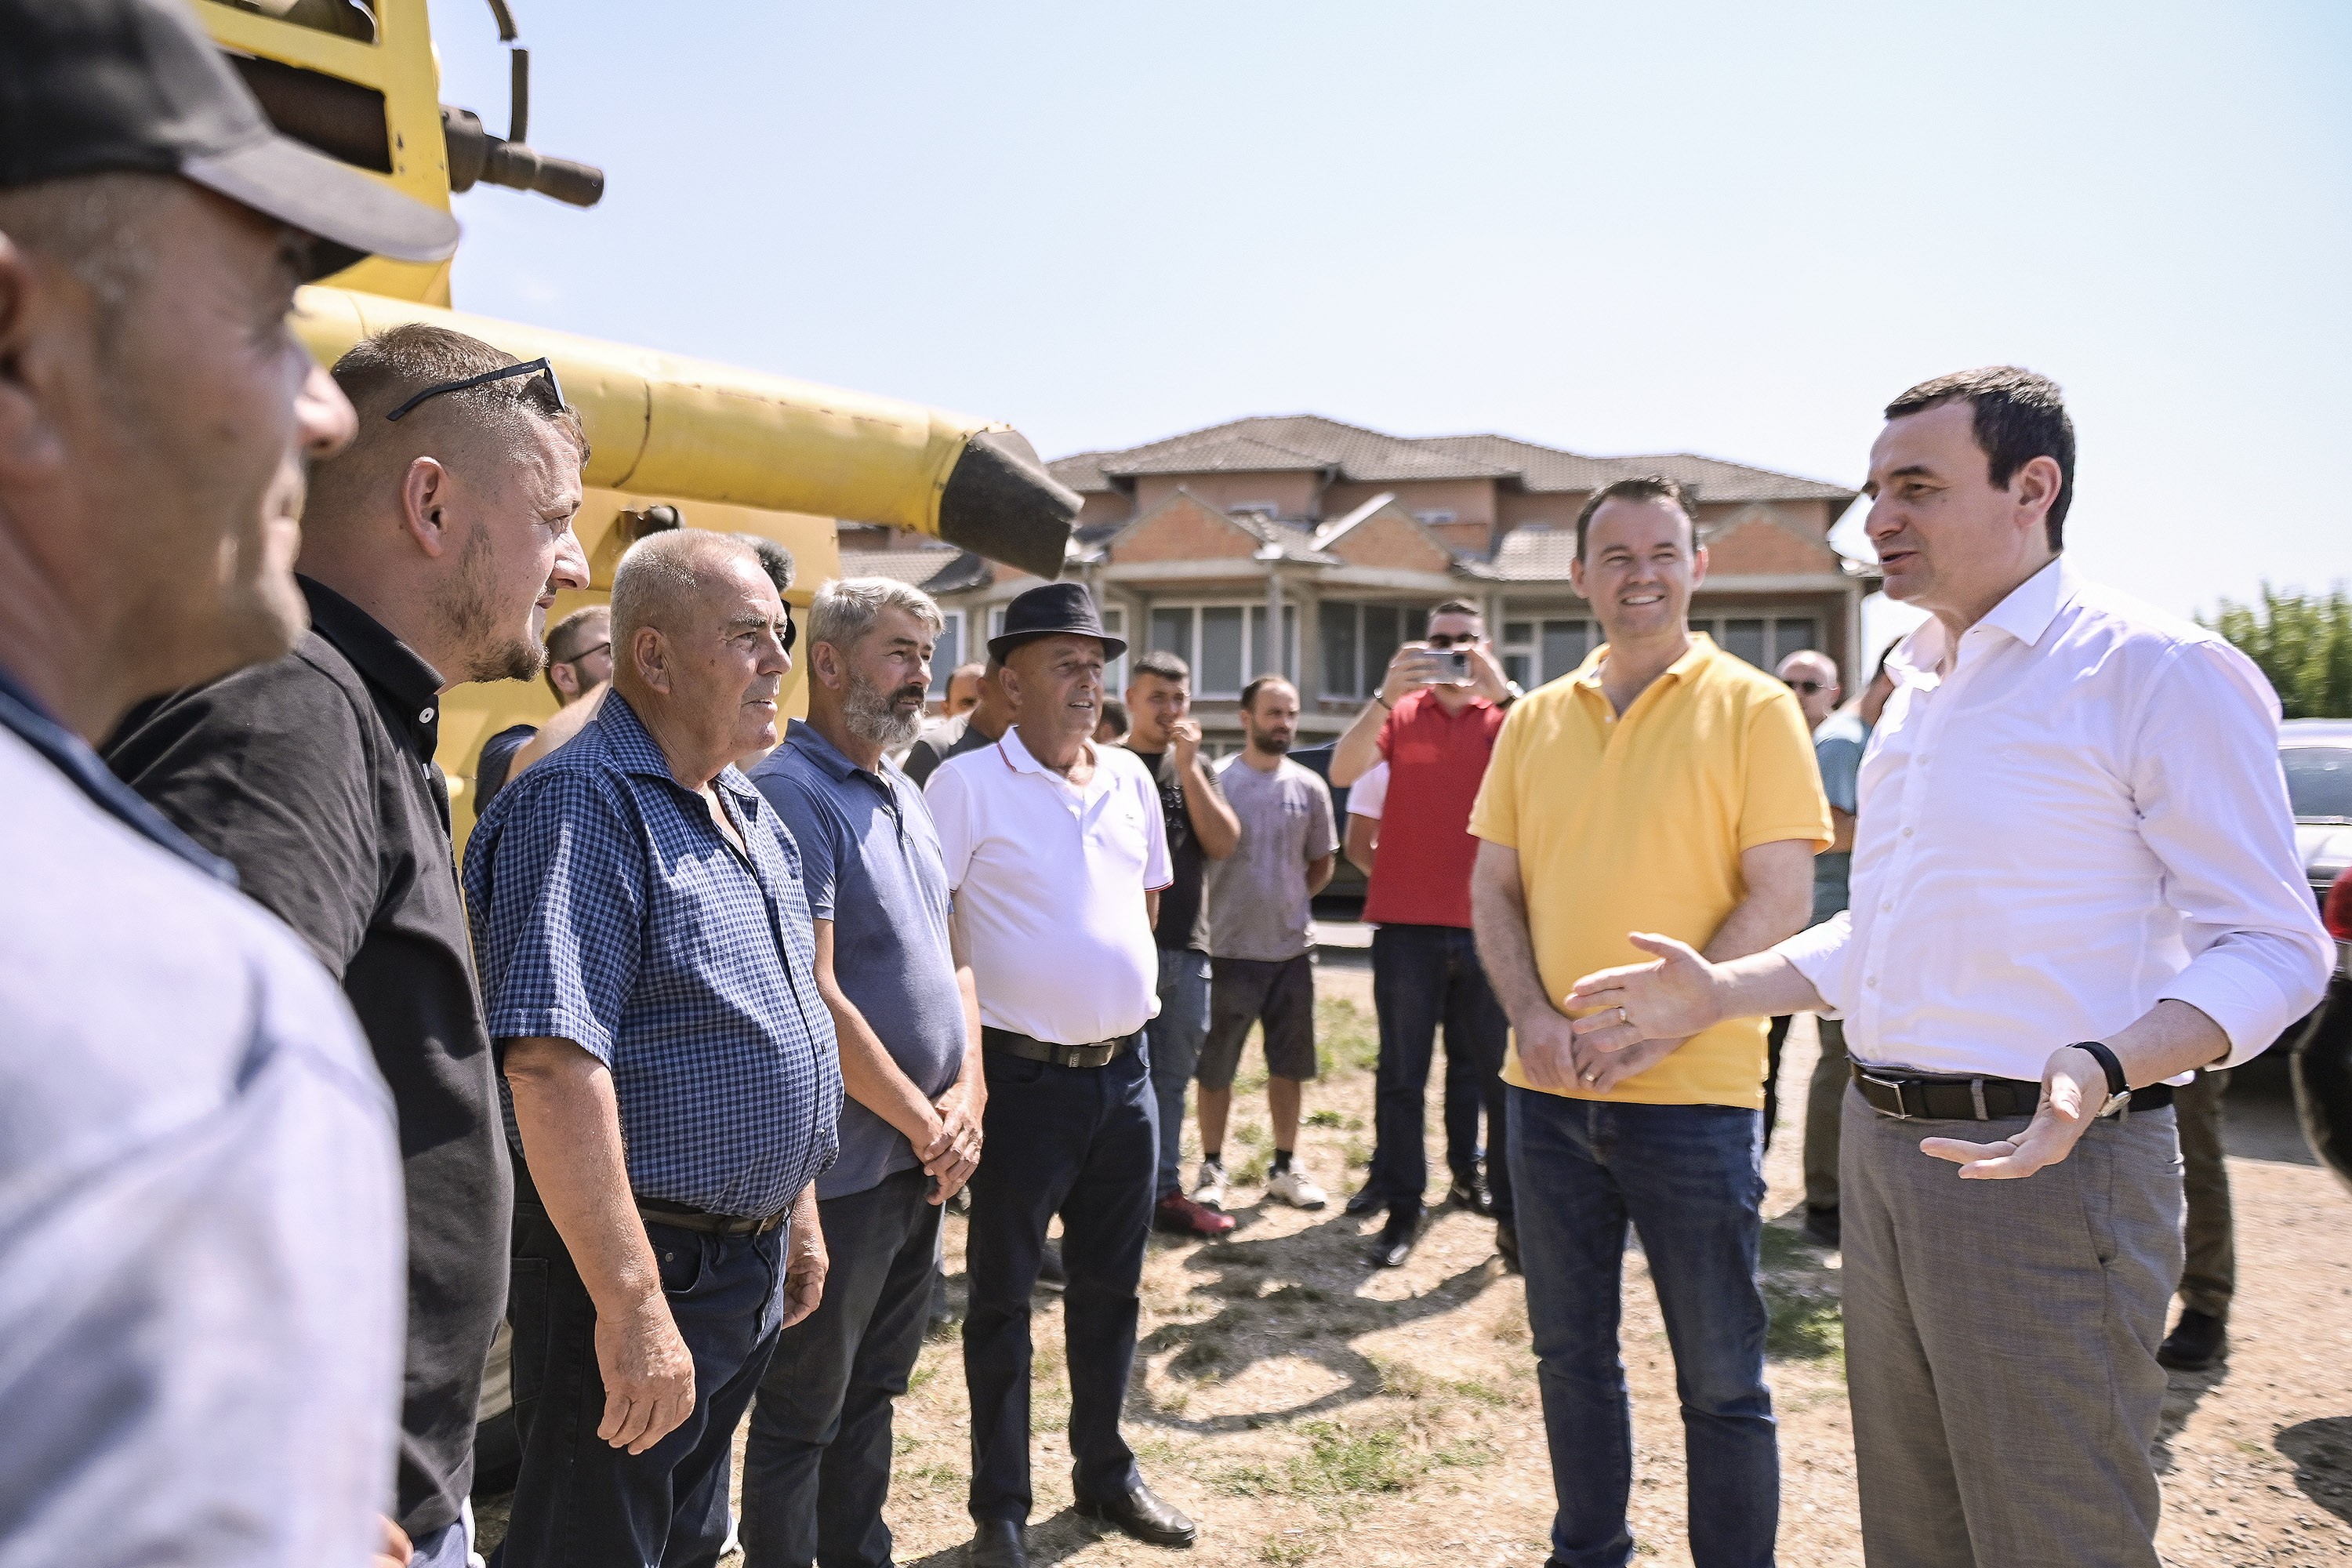 Kryeministri Kurti vizitoi korrje-shirjet në Sopi të Komunës së Suharekës